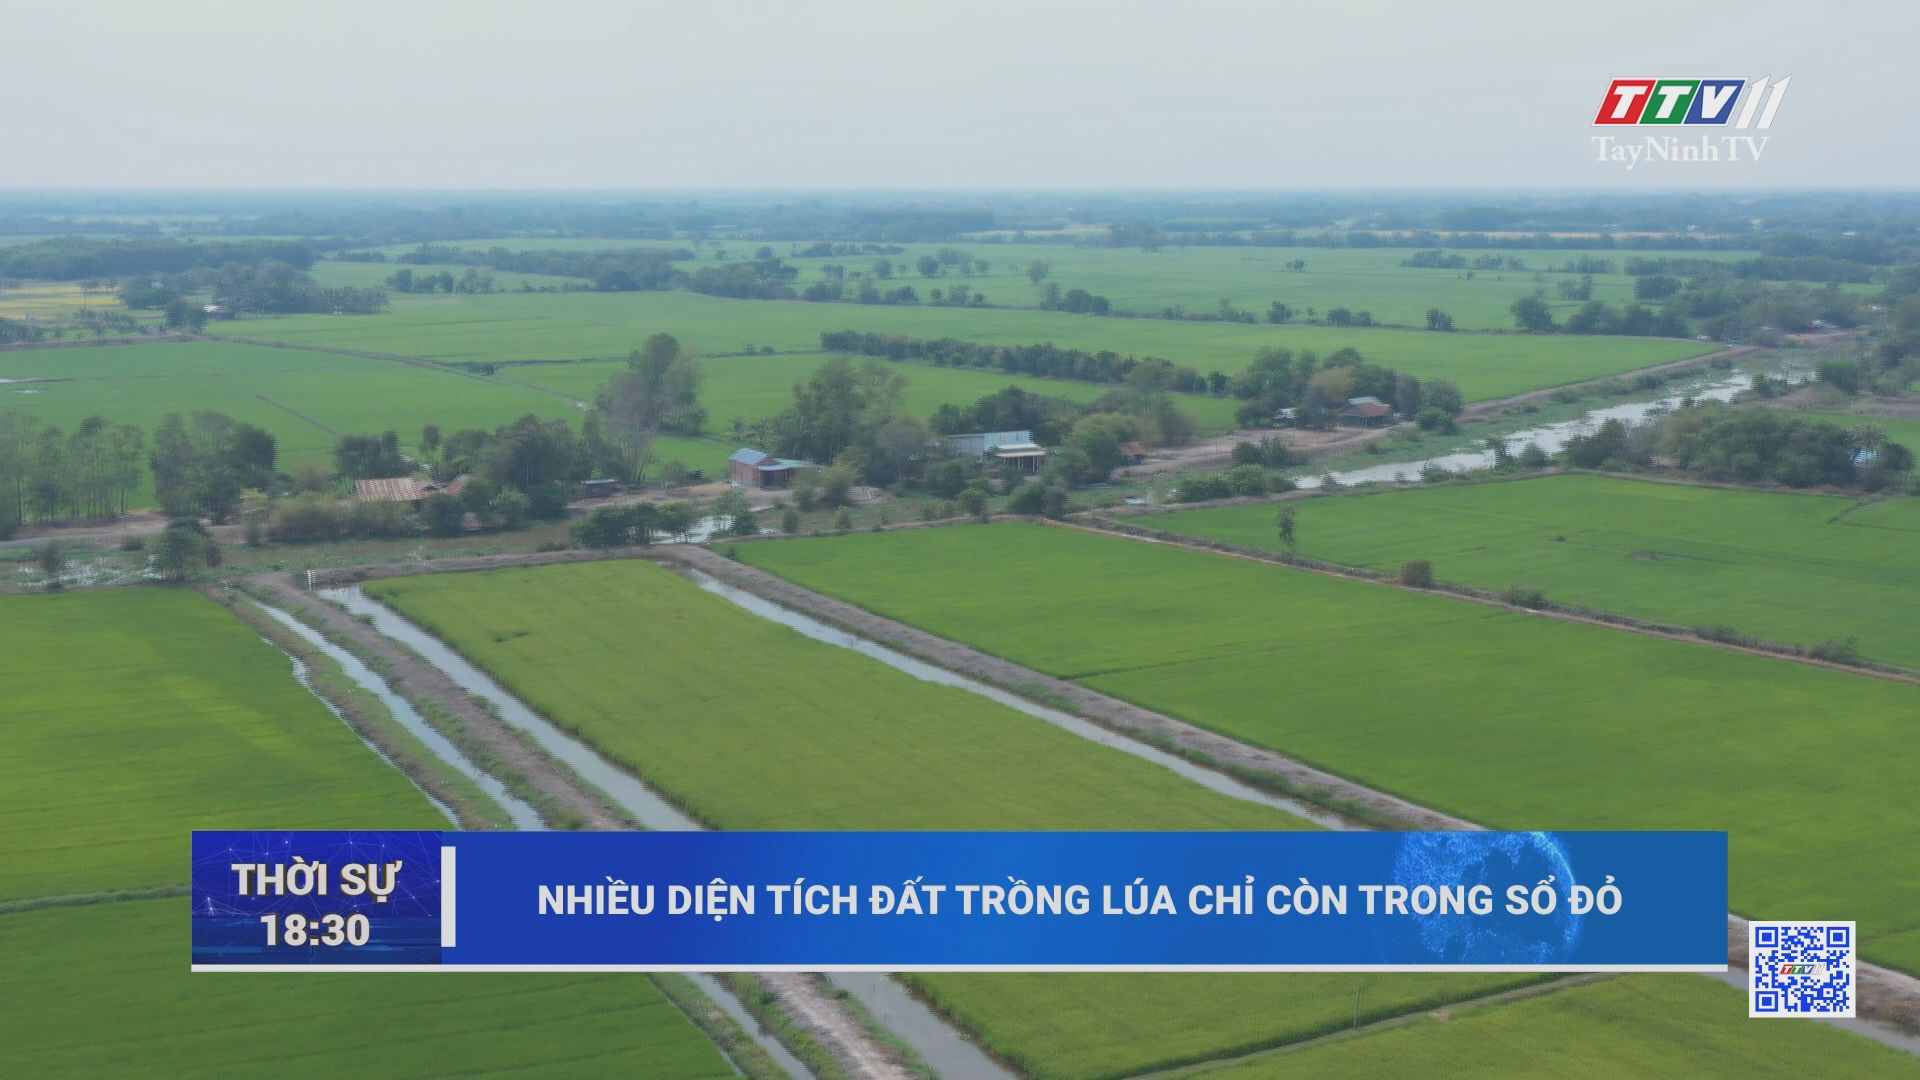 Nhiều diện tích đất trồng lúa chỉ còn trong sổ đỏ | TayNinhTV